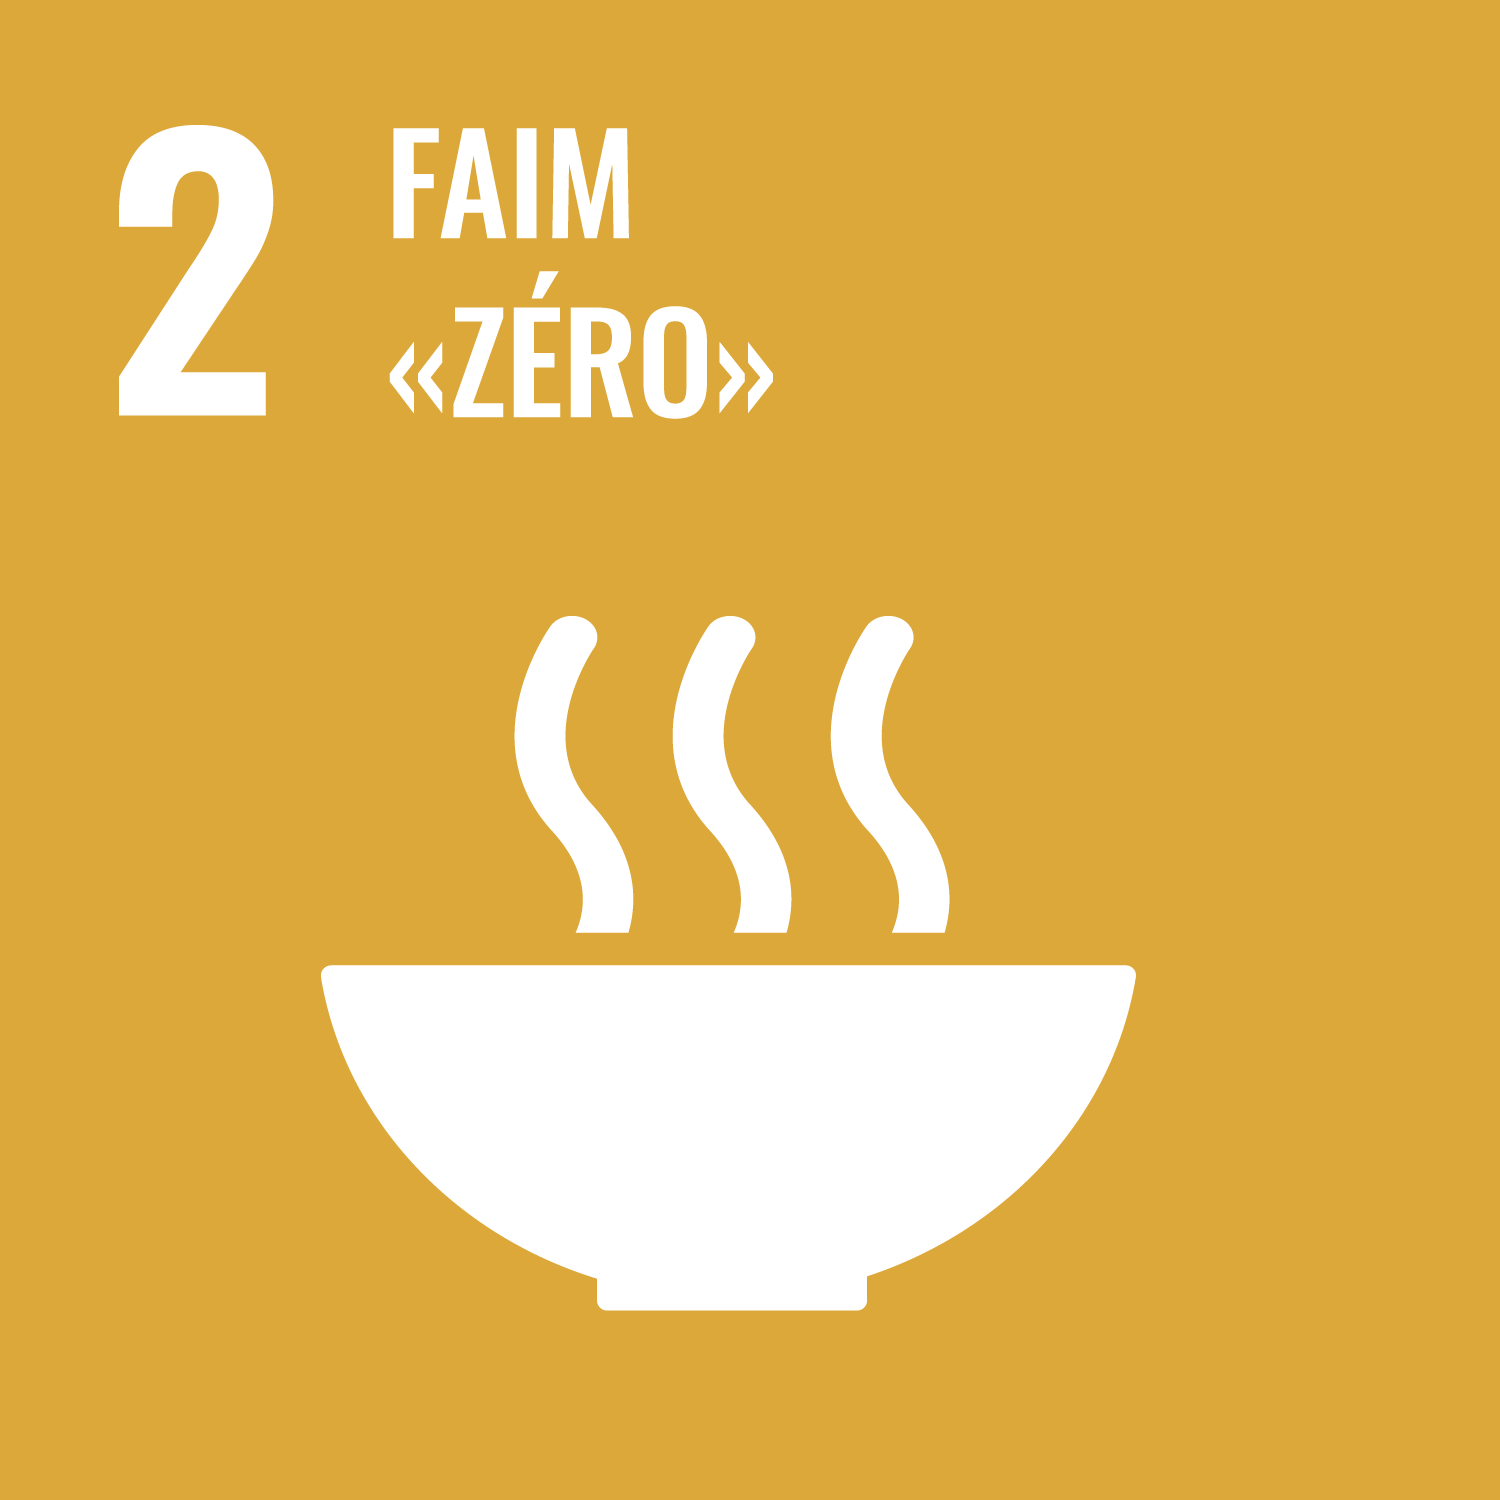 Objectif de Développement Durable de l'O.N.U. 2 : faim "zéro"